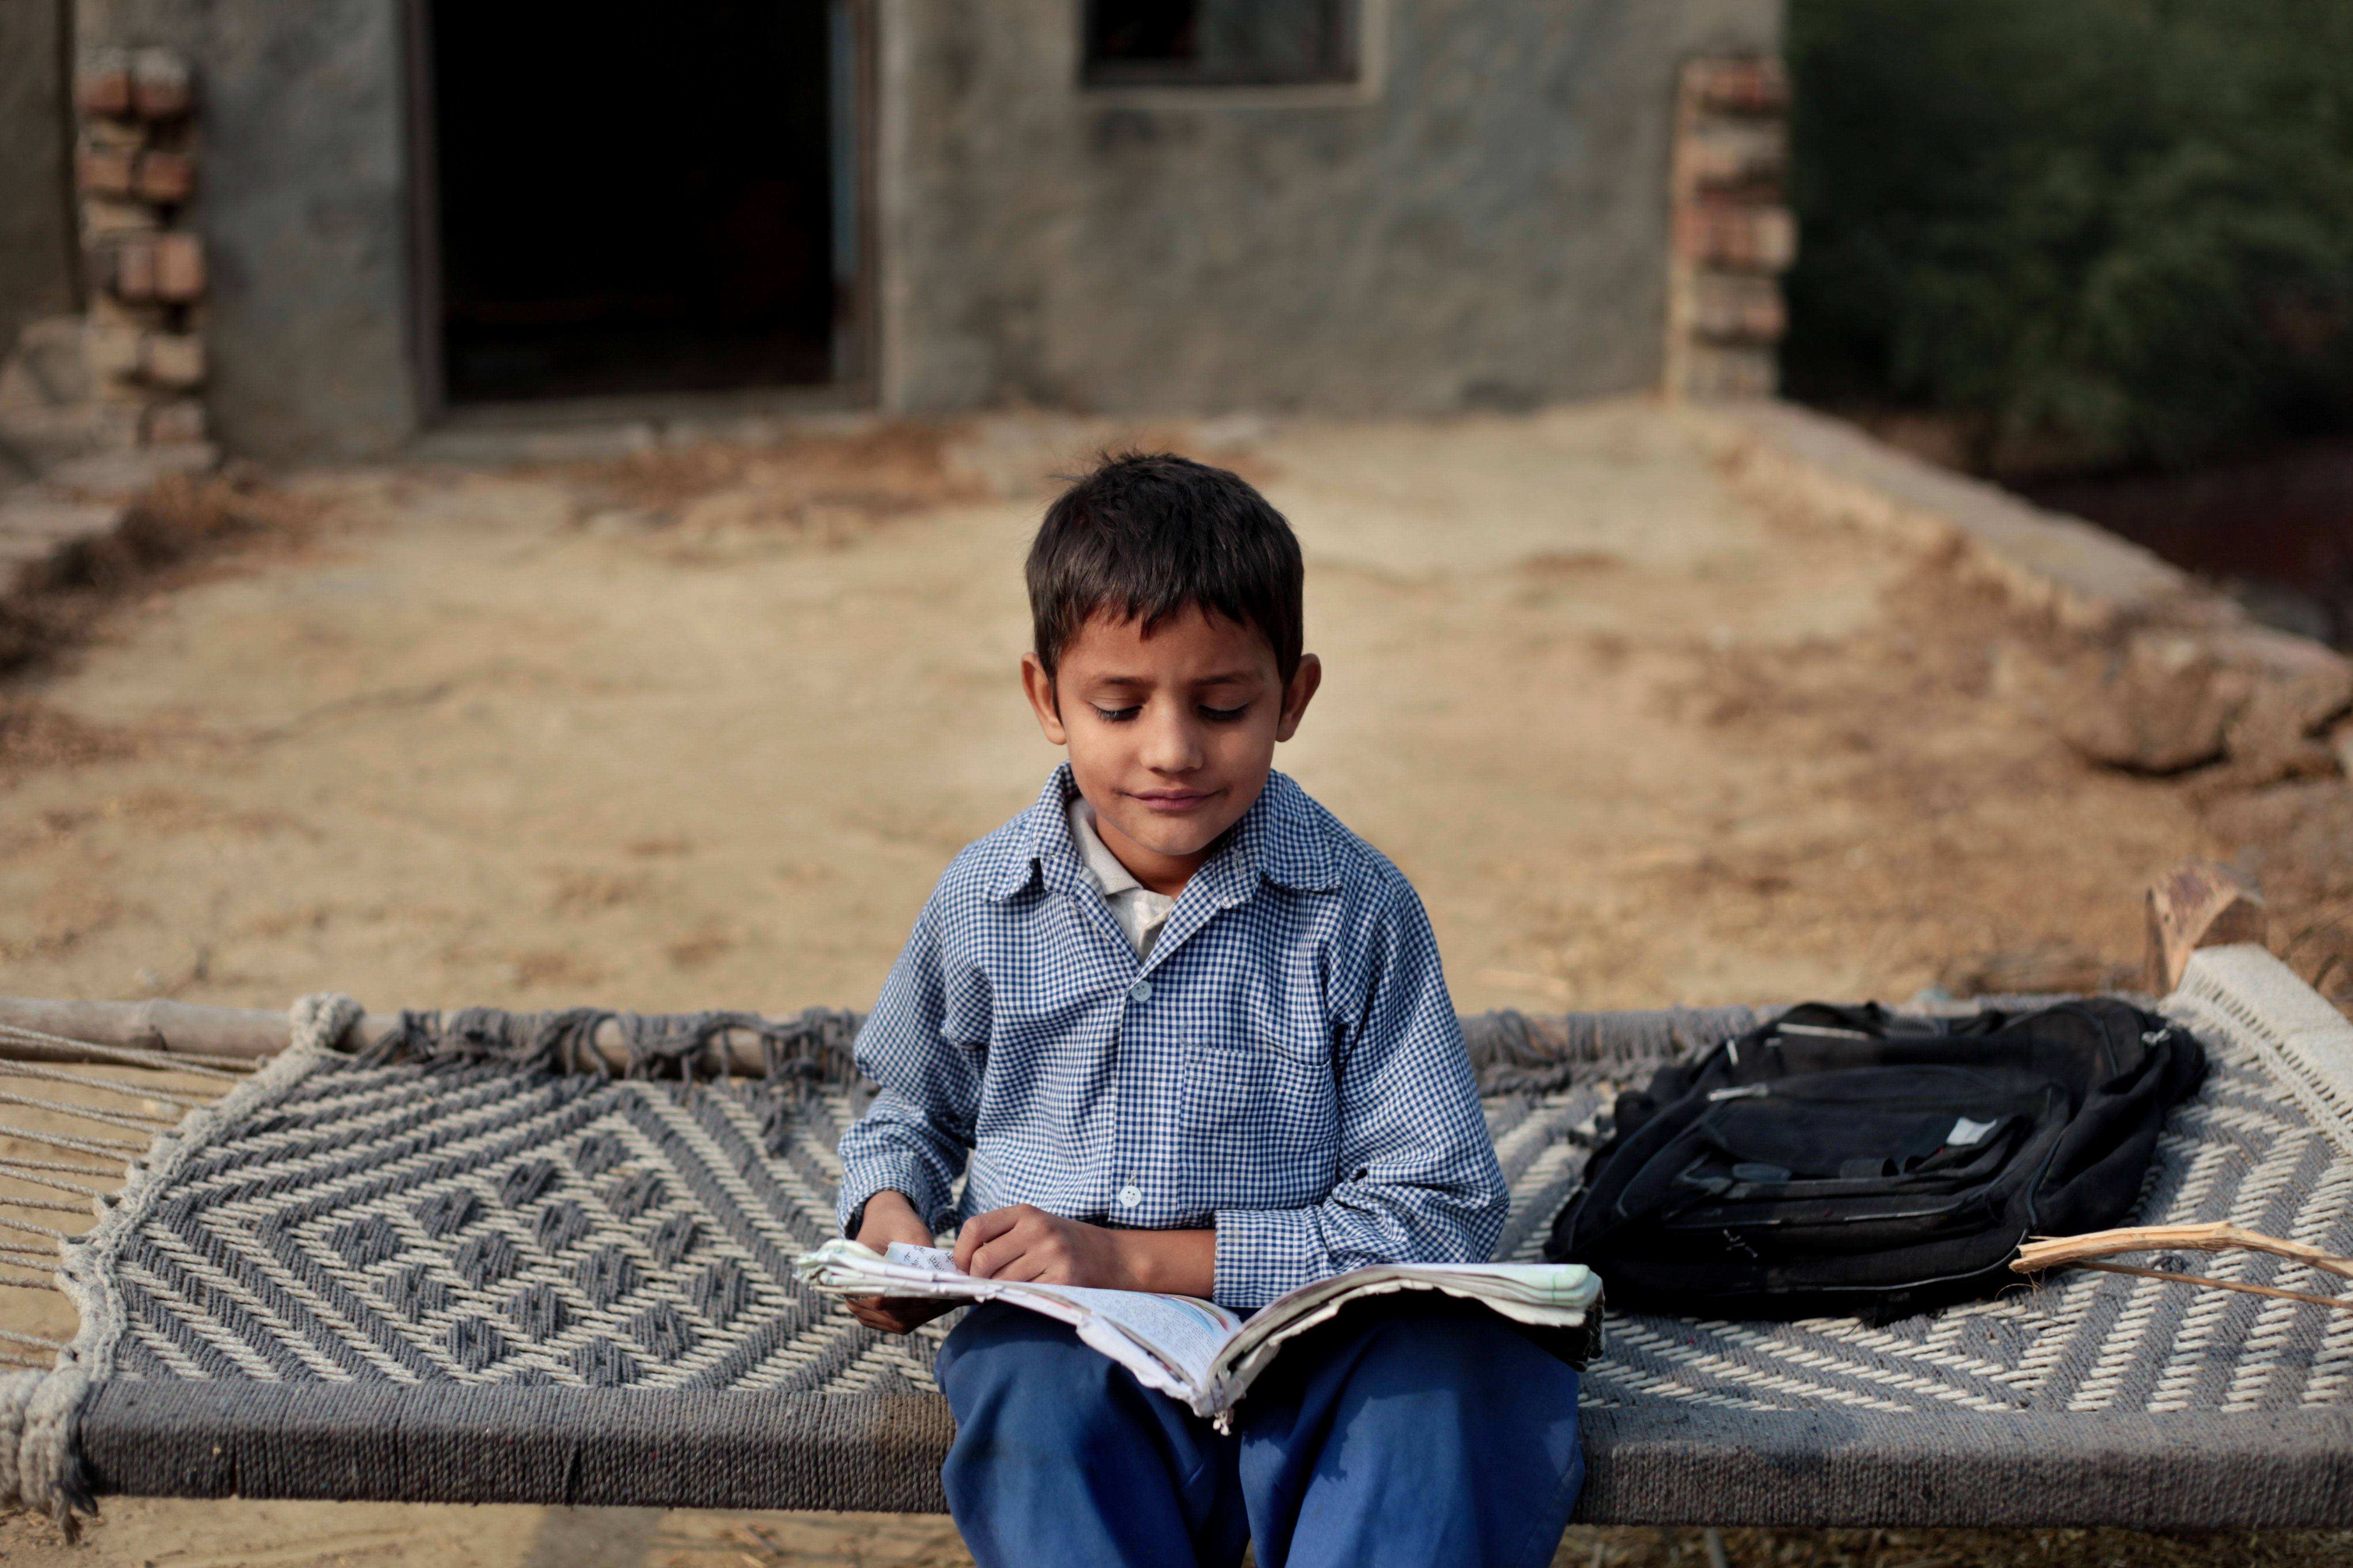 Ein Junge macht seine Hausaufgaben in einer ländlichen Gegend. | Quelle: Getty Images